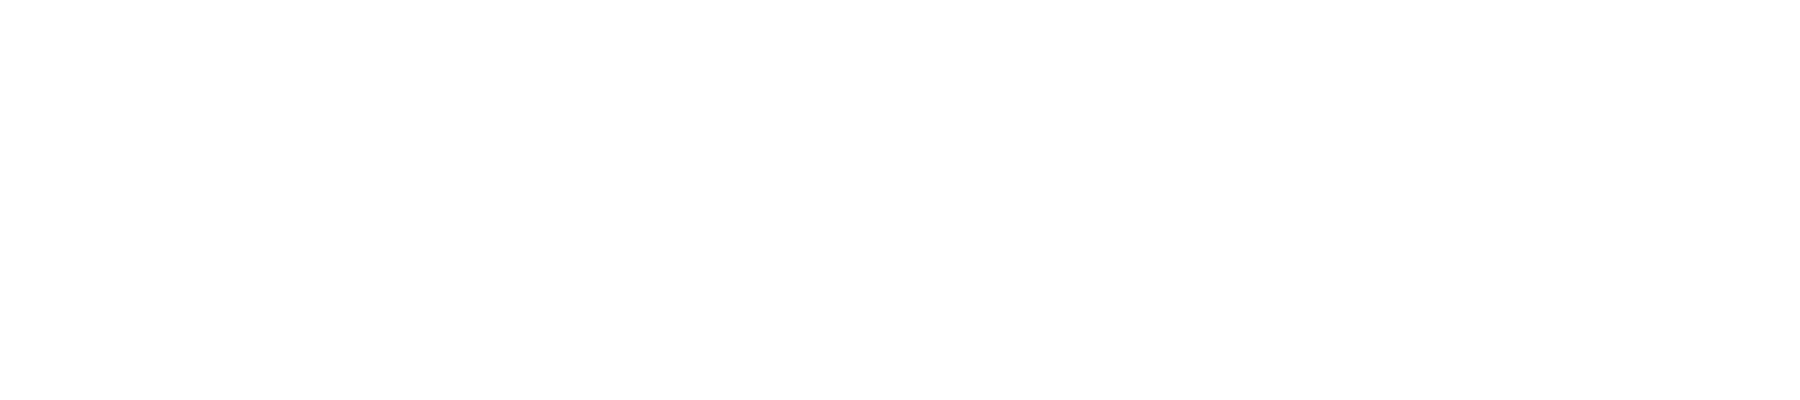 Milena Sidorova [official website]